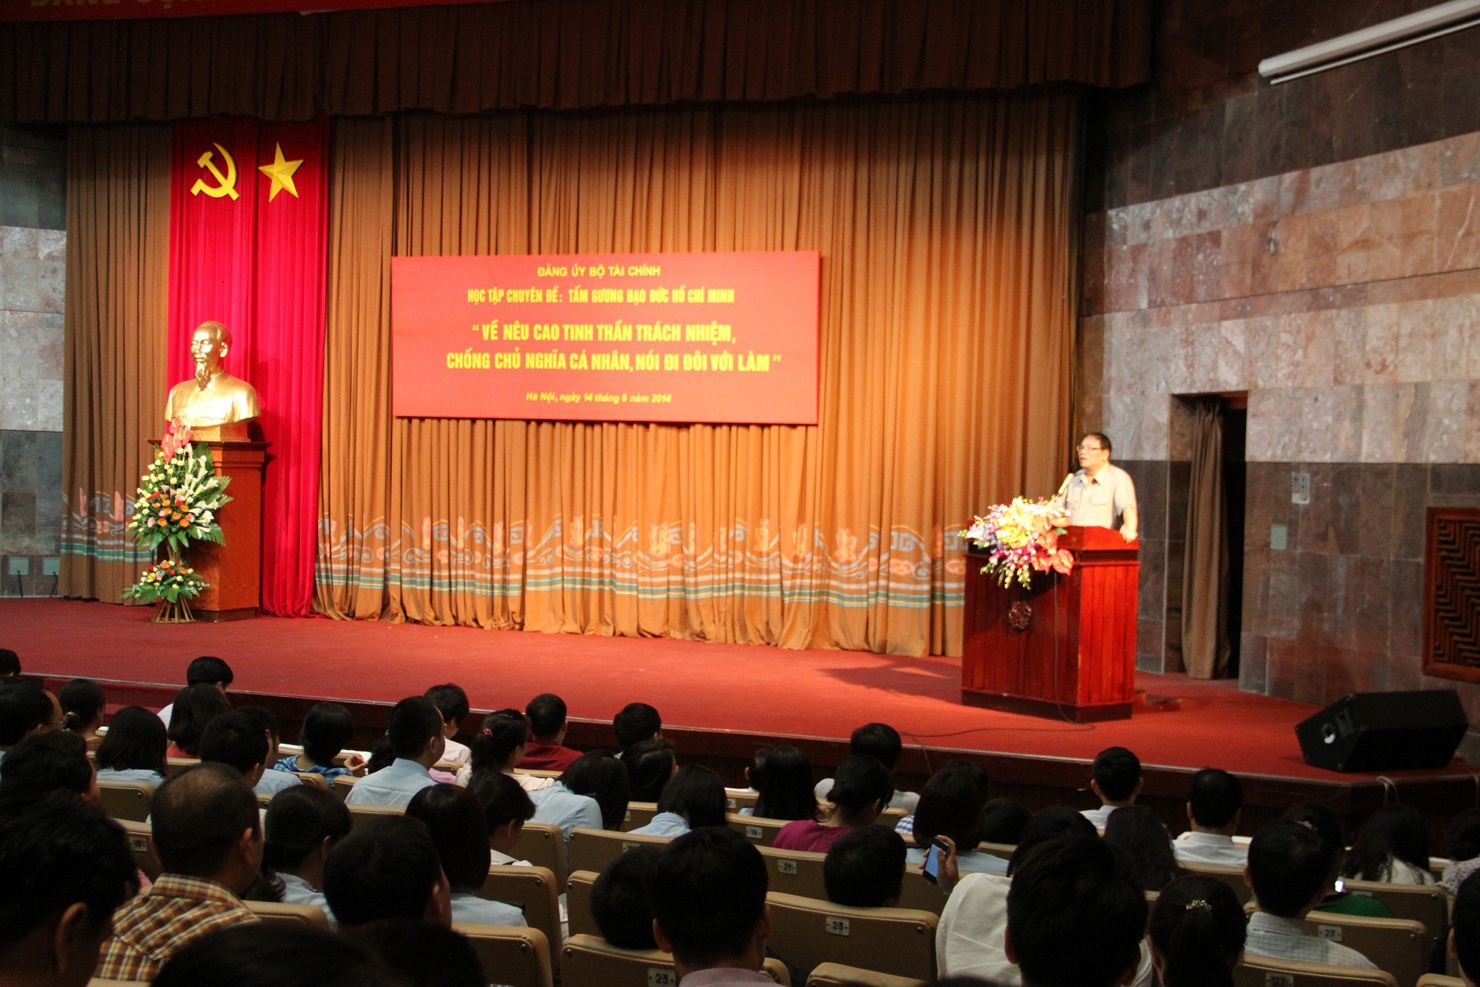 Cán bộ, đảng viên Đảng bộ Bộ Tài chính học tập chuyên đề tấm gương đạo đức Hồ Chí Minh chuyên đề 2014 tại Bảo tàng Hồ Chí Minh. Nguồn: Đặc san TTCTĐ số 4 - tháng 7/2015